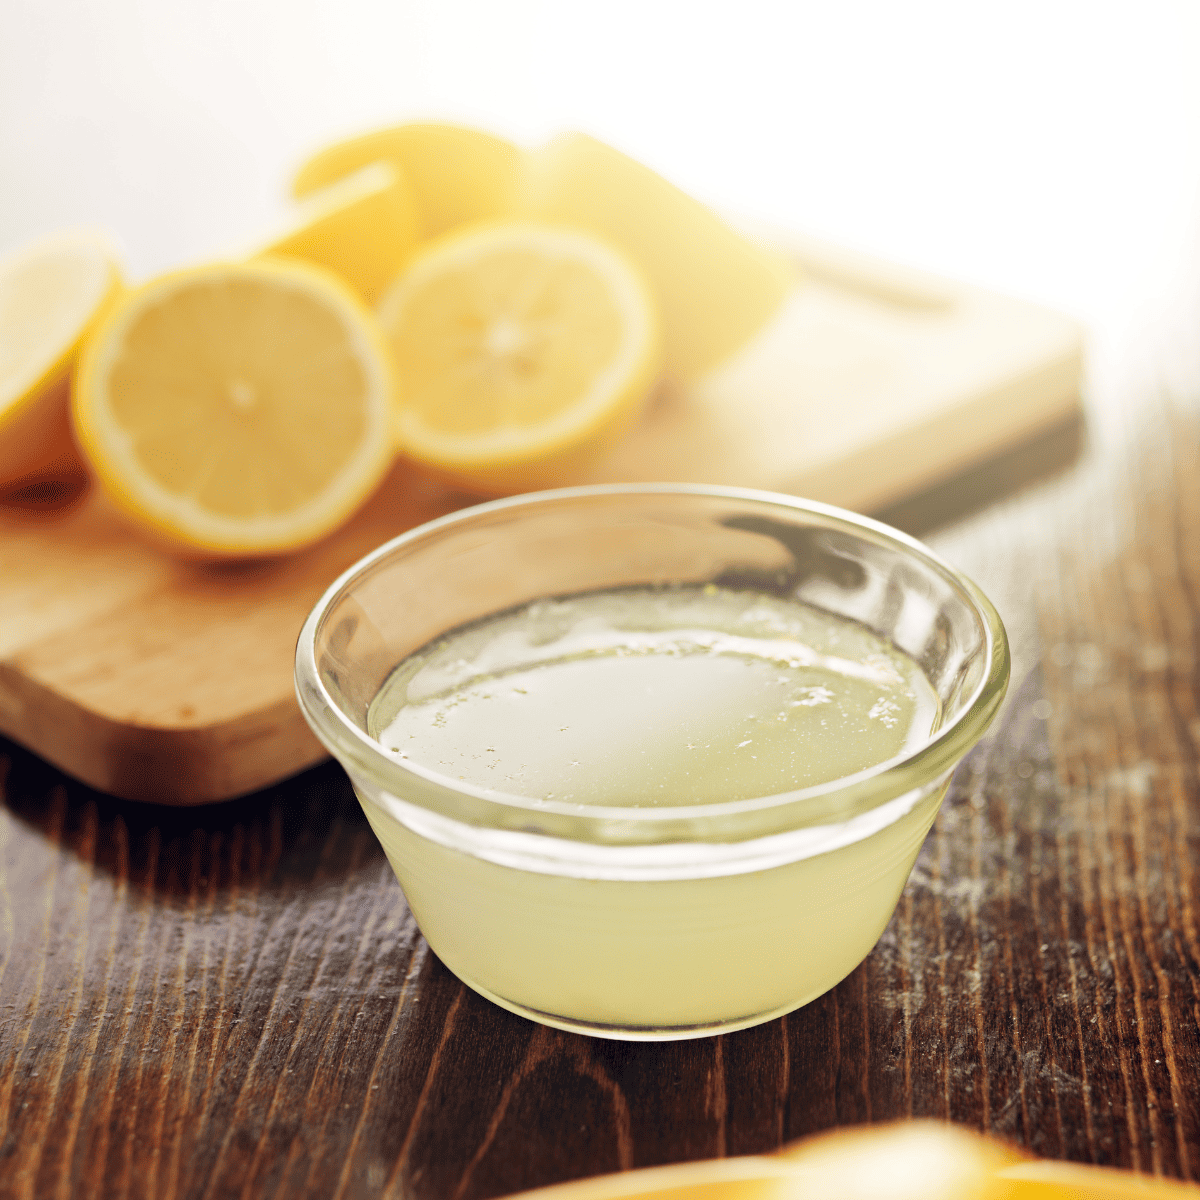 Ninja Creami Lemon Sorbet (So Refreshing!) - The Top Meal